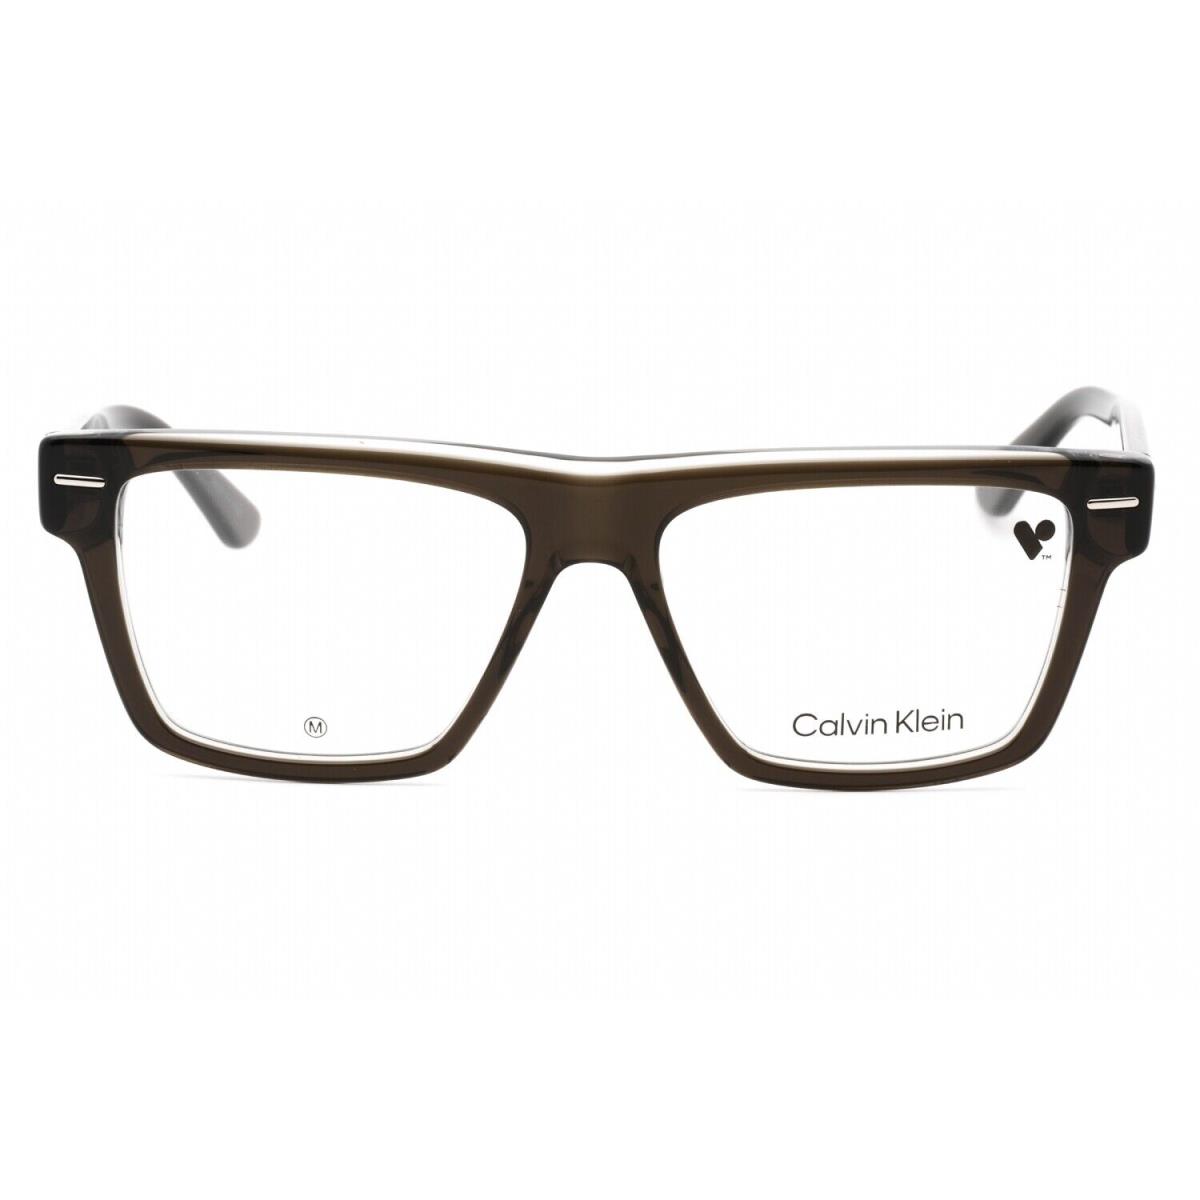 Calvin Klein CK23522 035 Eyeglasses Gray Frame 53mm